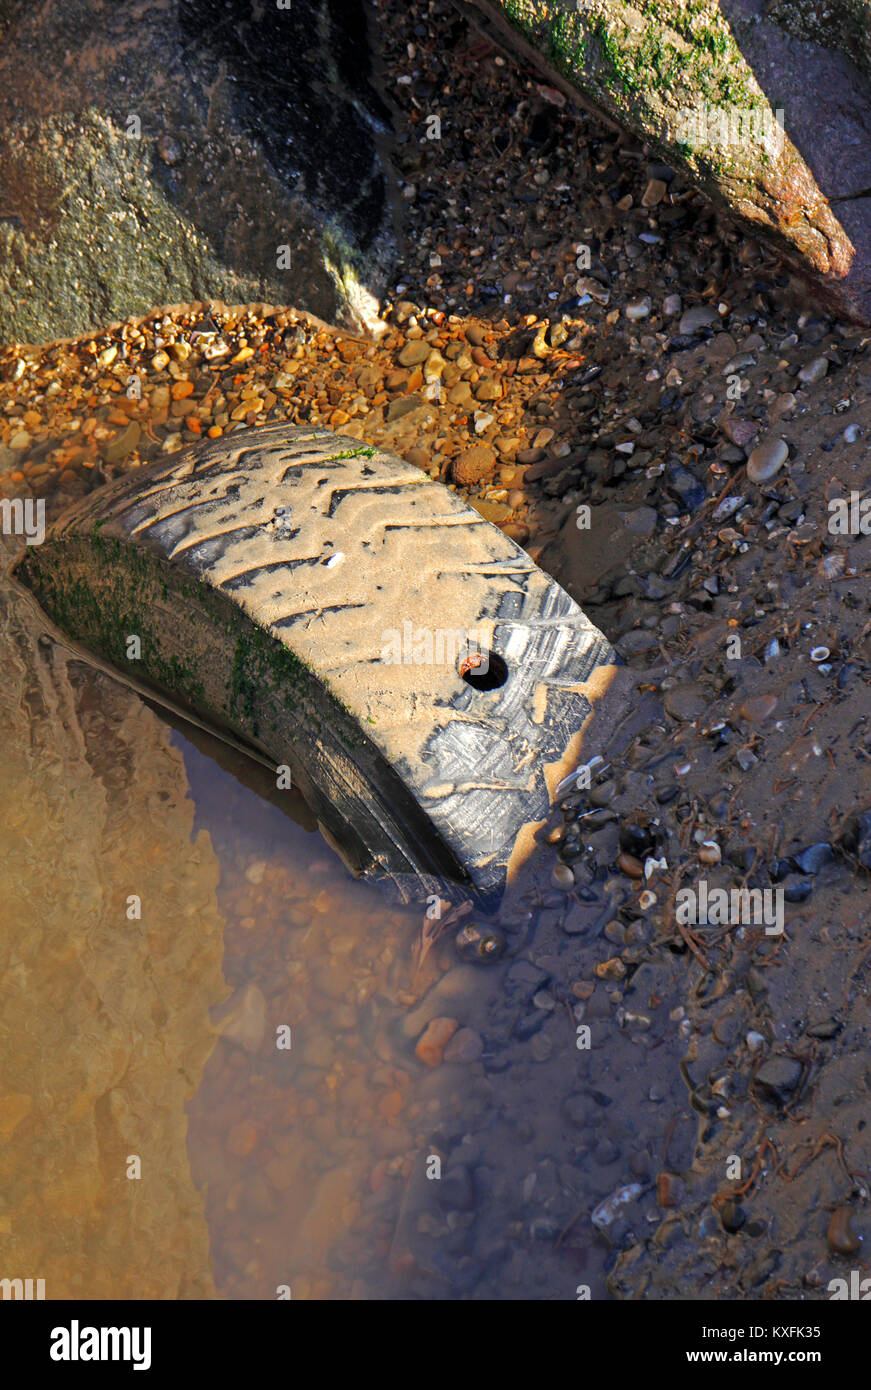 Un vieux pneu abandonné à moitié enfoui sur une plage à Norfolk, Angleterre, Royaume-Uni. Banque D'Images